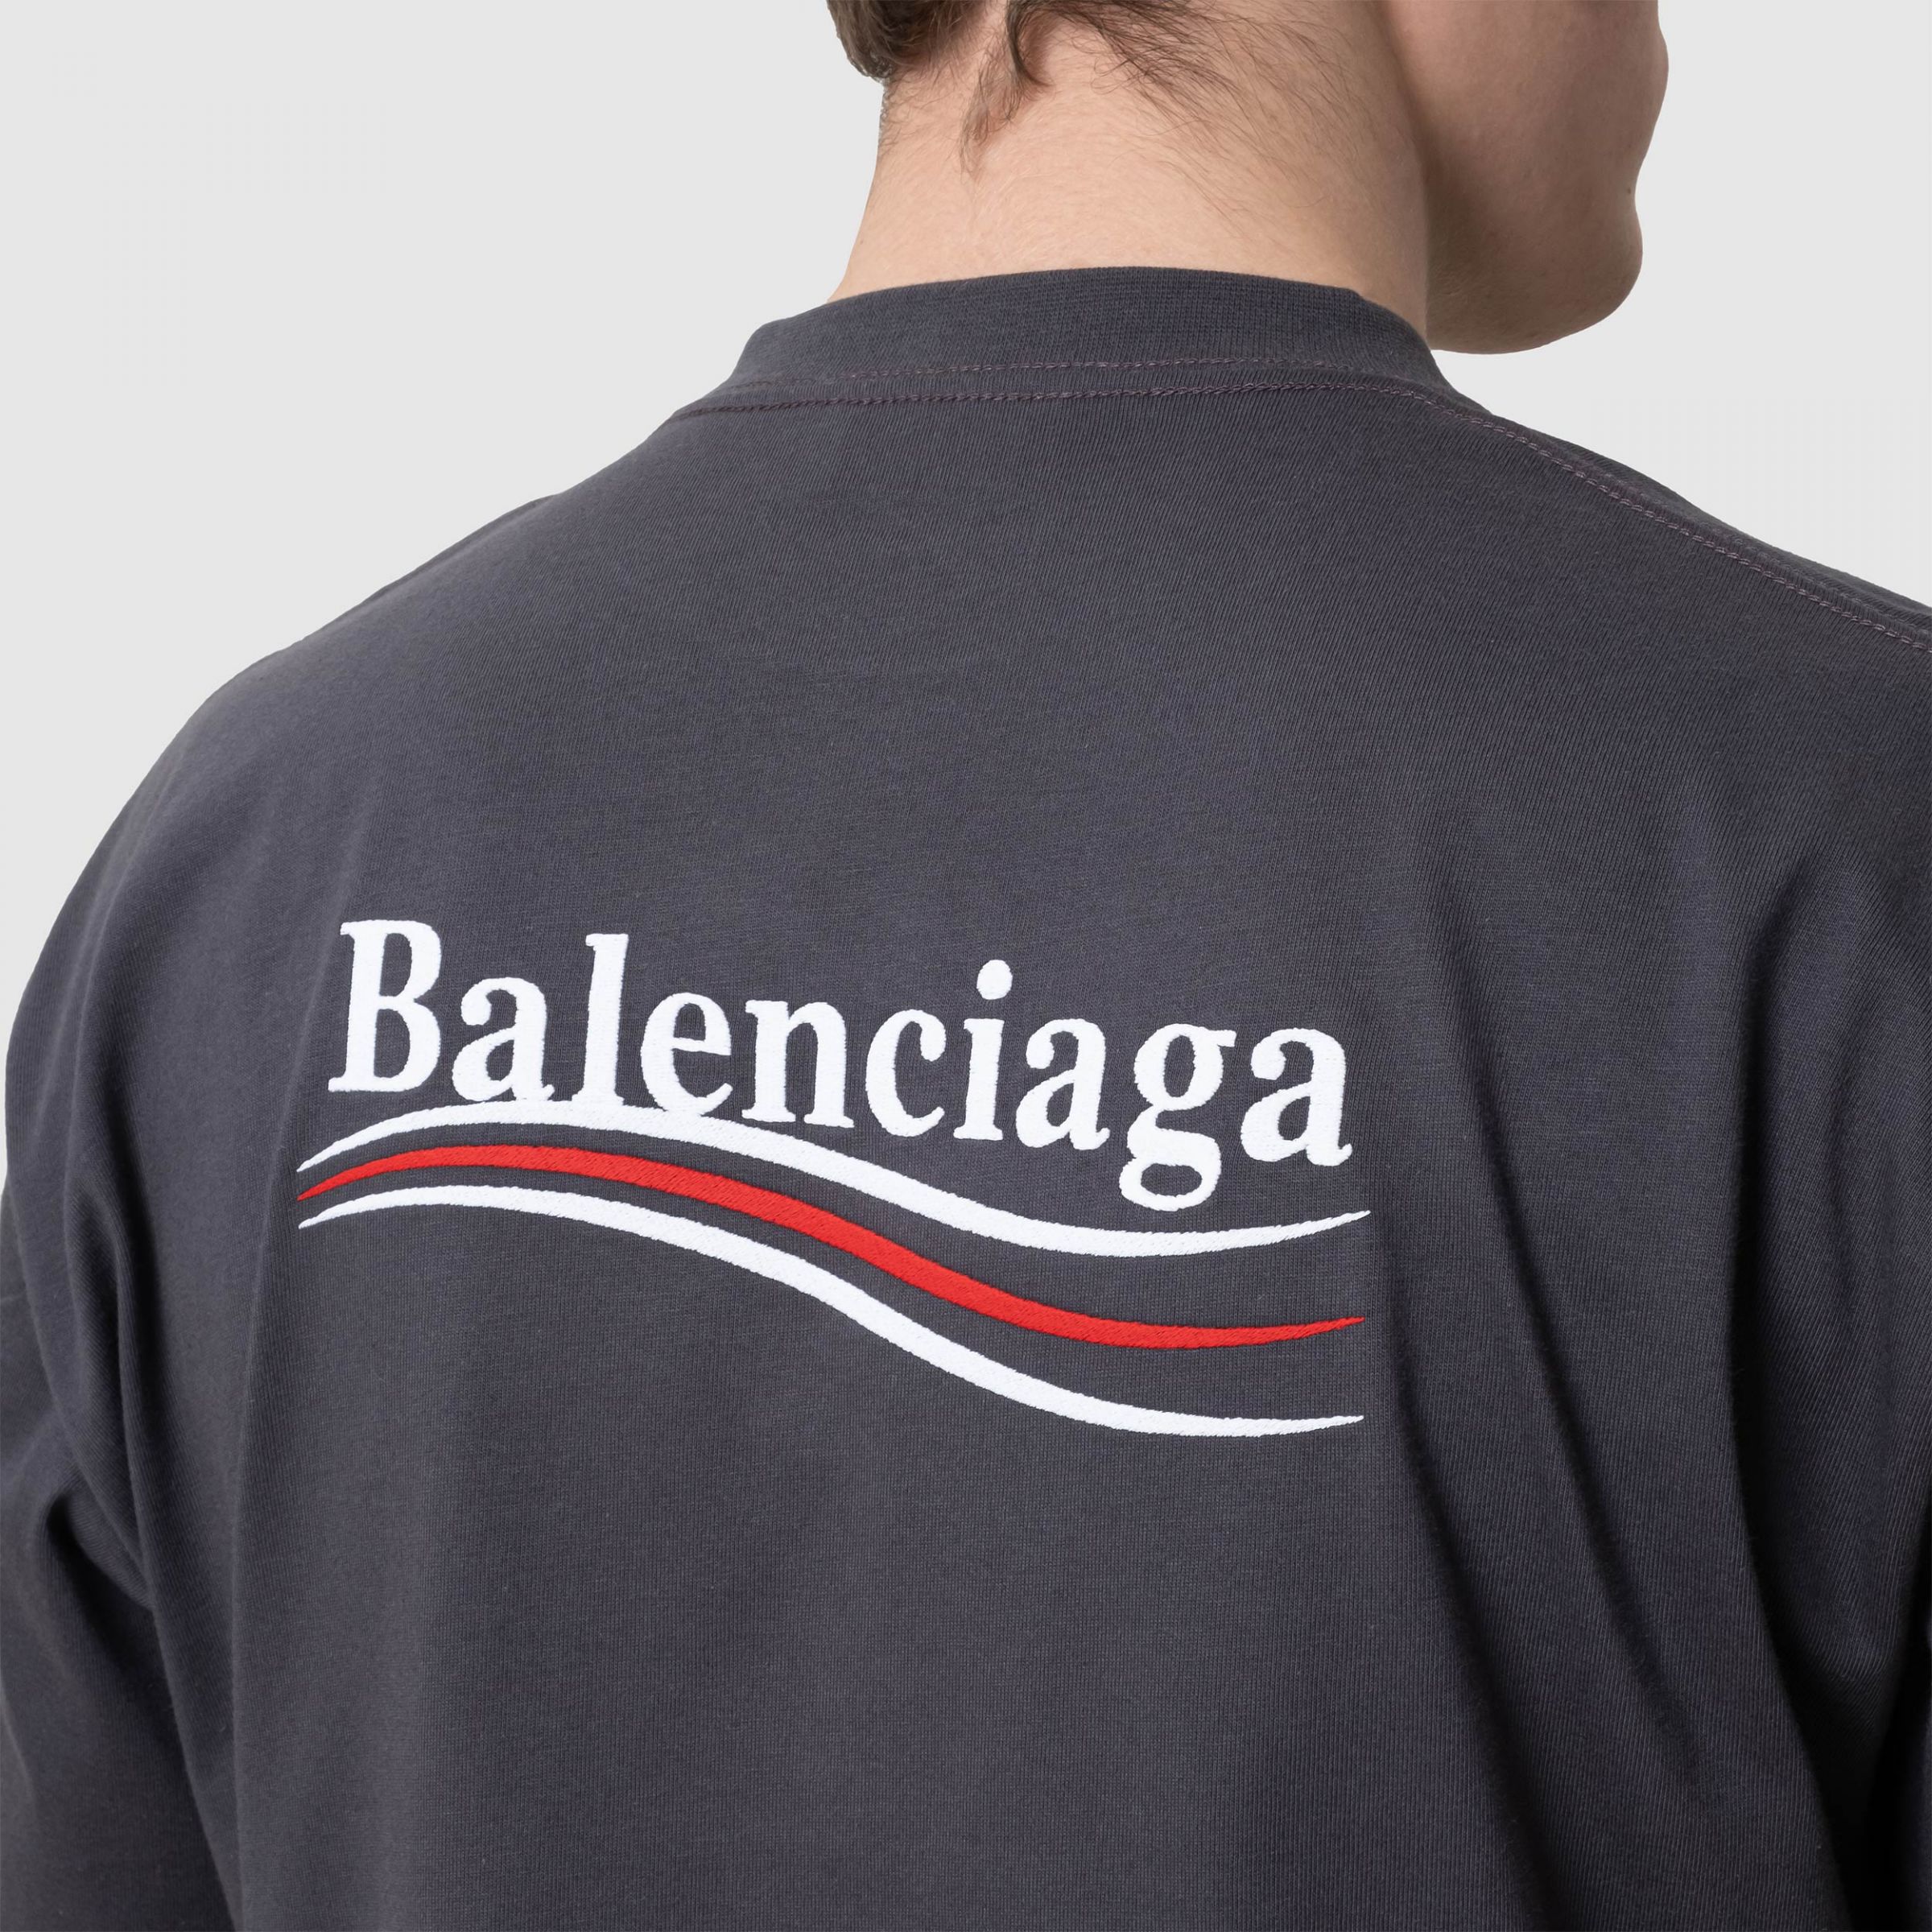 Футболка Balenciaga темно-серая